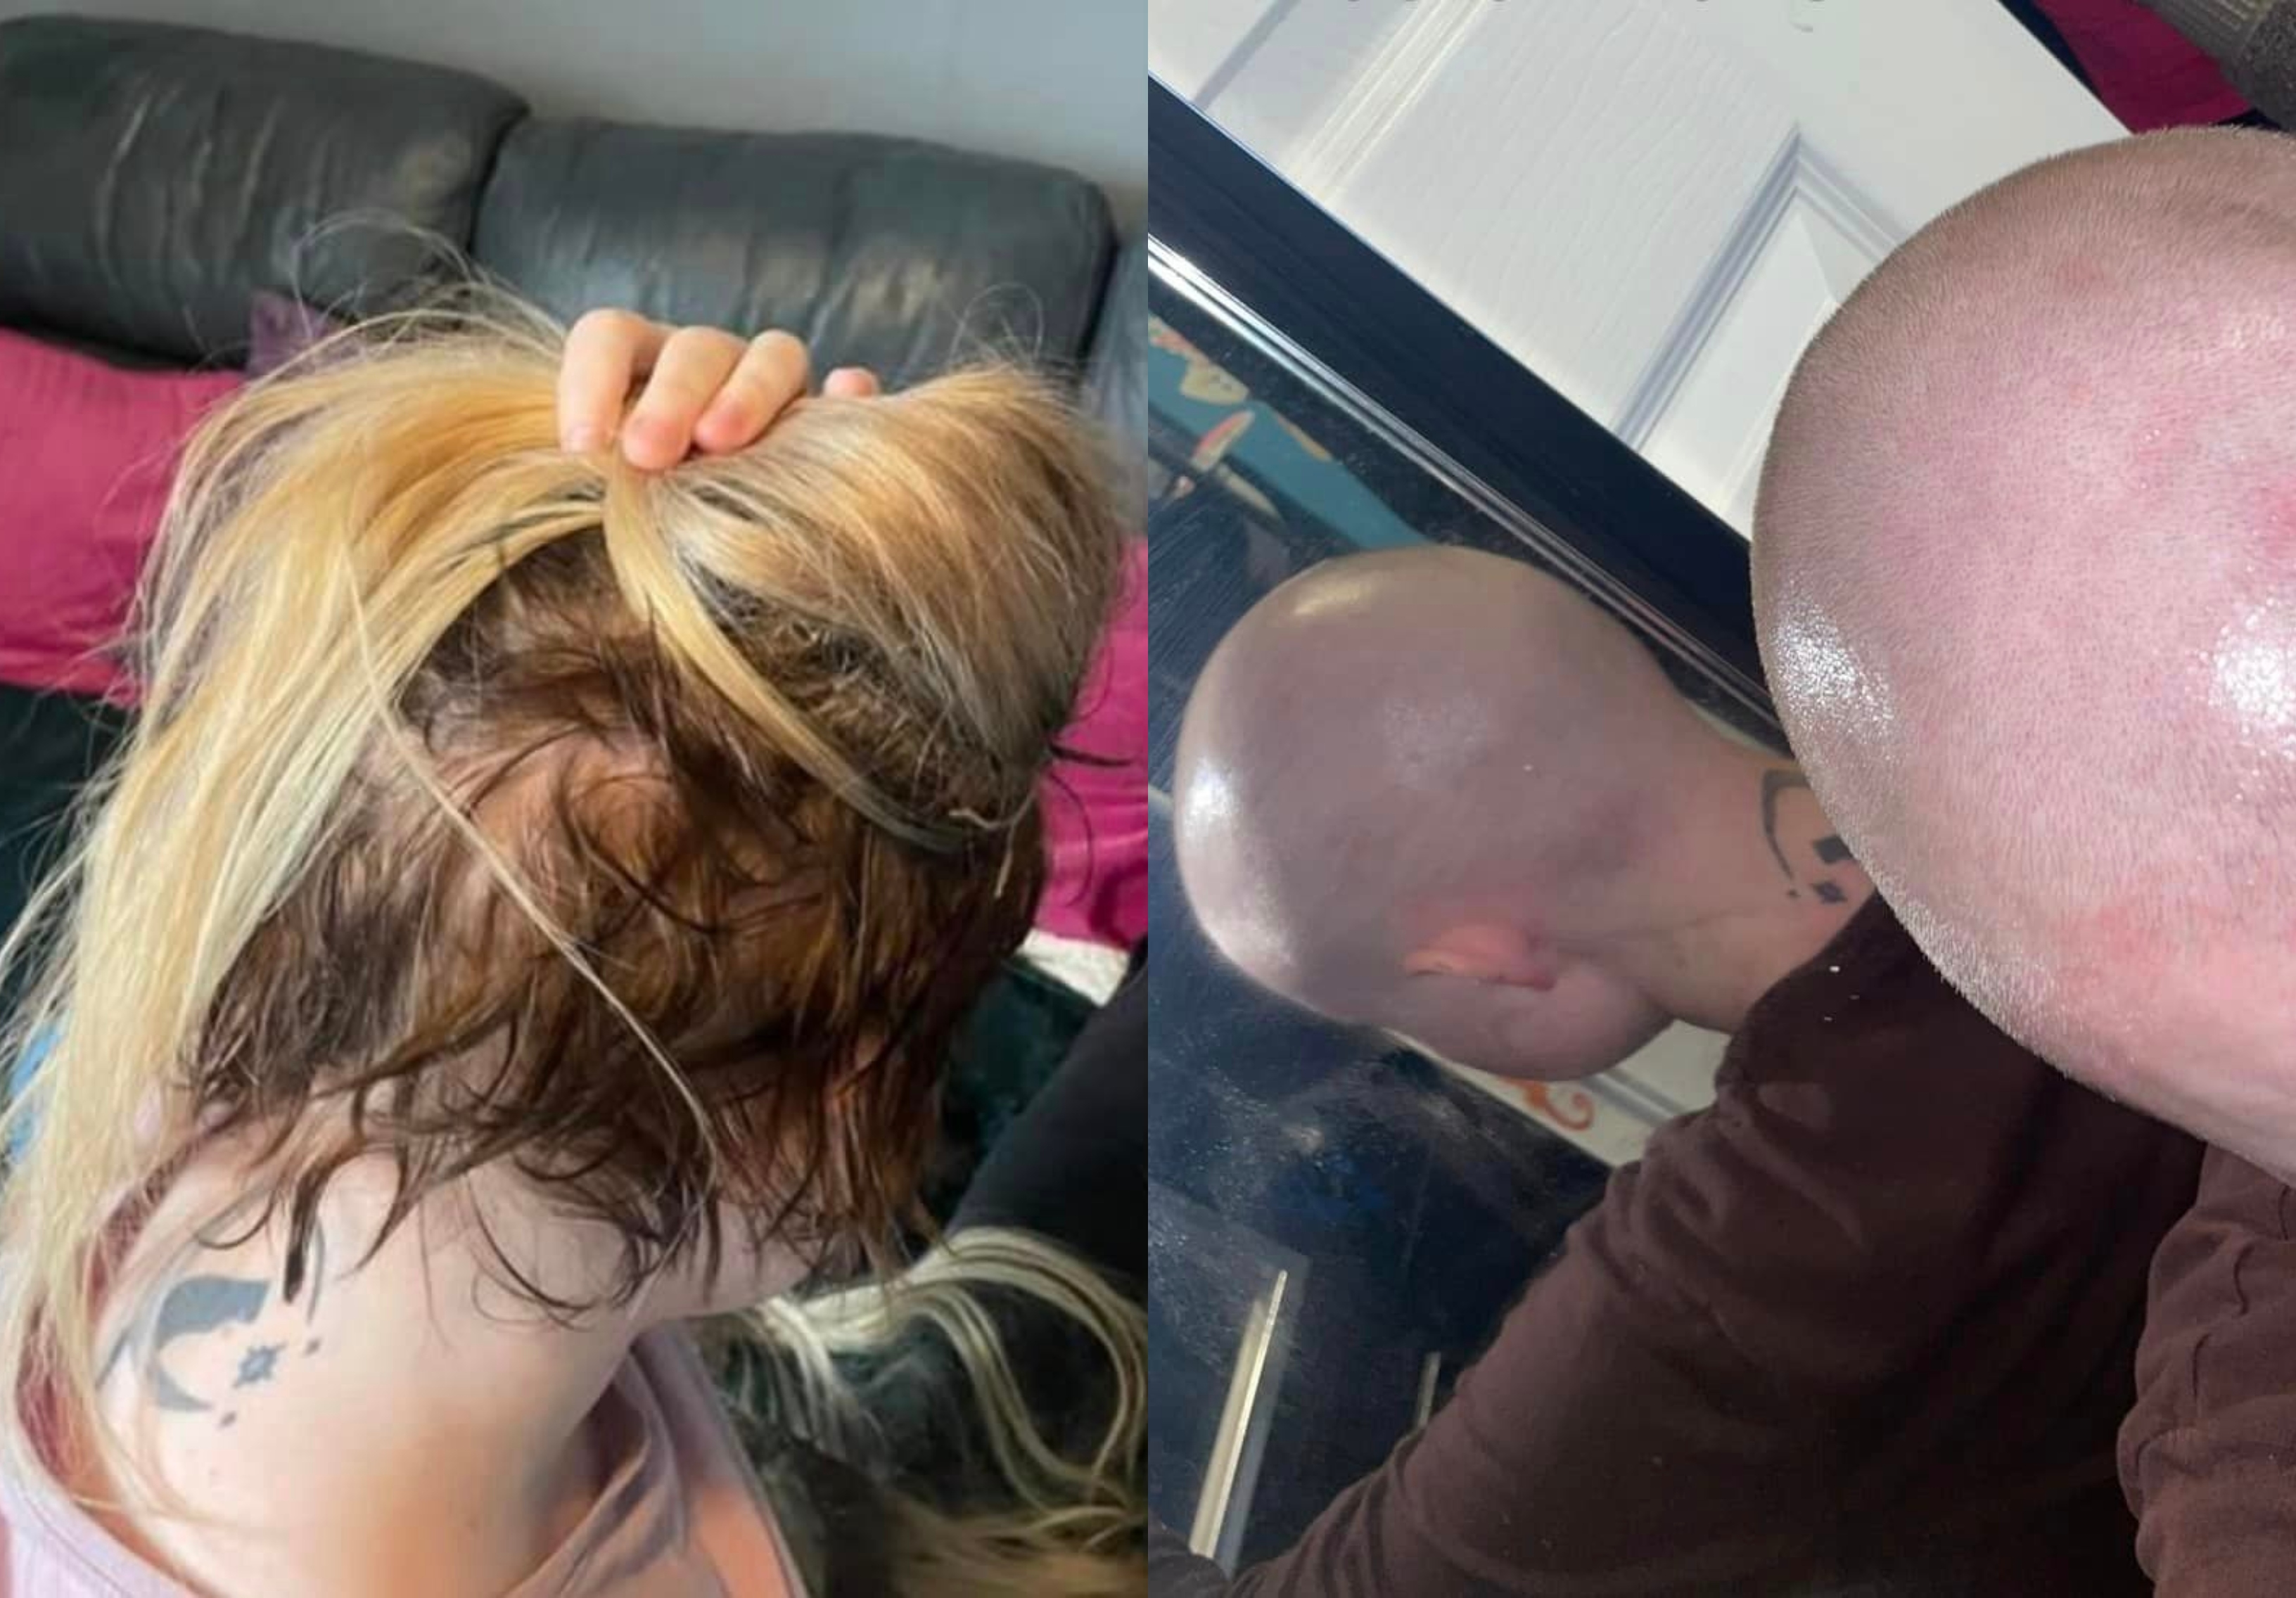 Γυναίκα αναγκάστηκε να ξυρίσει το κεφάλι της λόγω extensions - «Αιμορραγούσα και έβγαζα φουσκάλες»